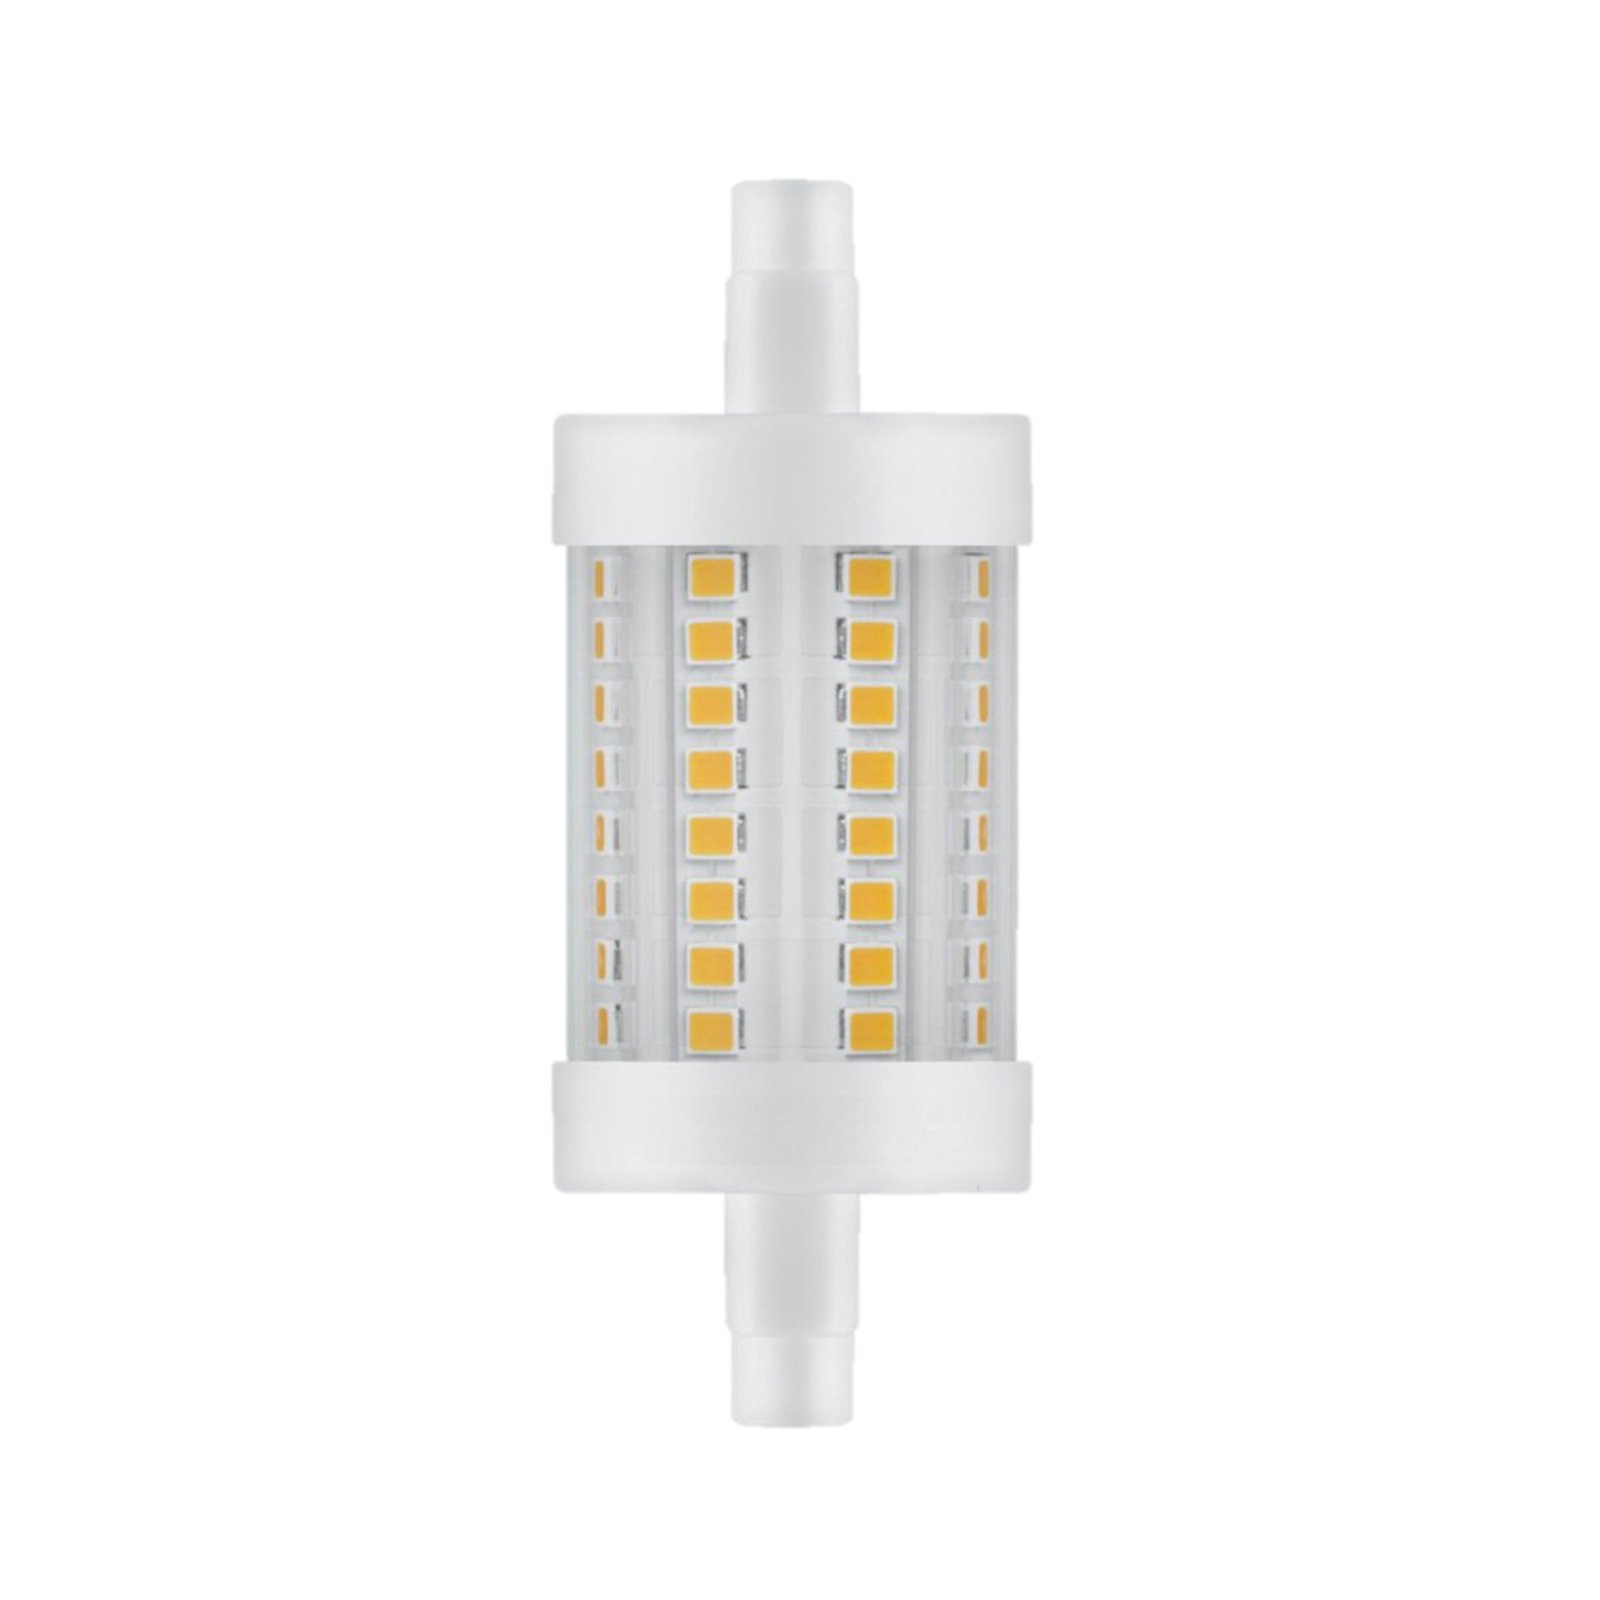 Radium LED Essence rörlampa R7s 8W 1055 lm